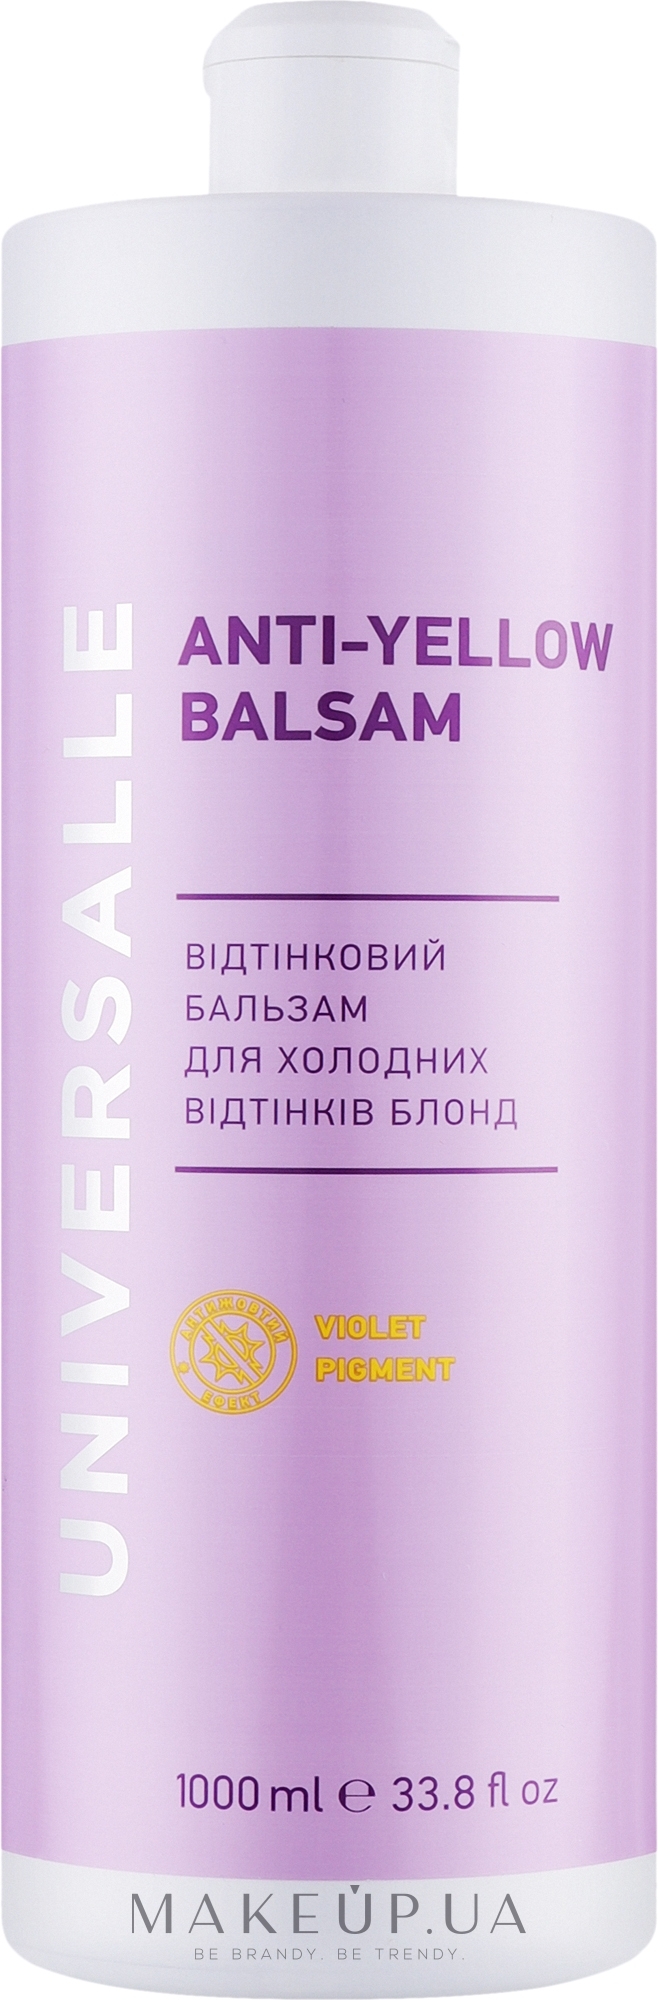 Оттеночный бальзам для волос - Universalle Anti-Yellow Balsam — фото 1000ml